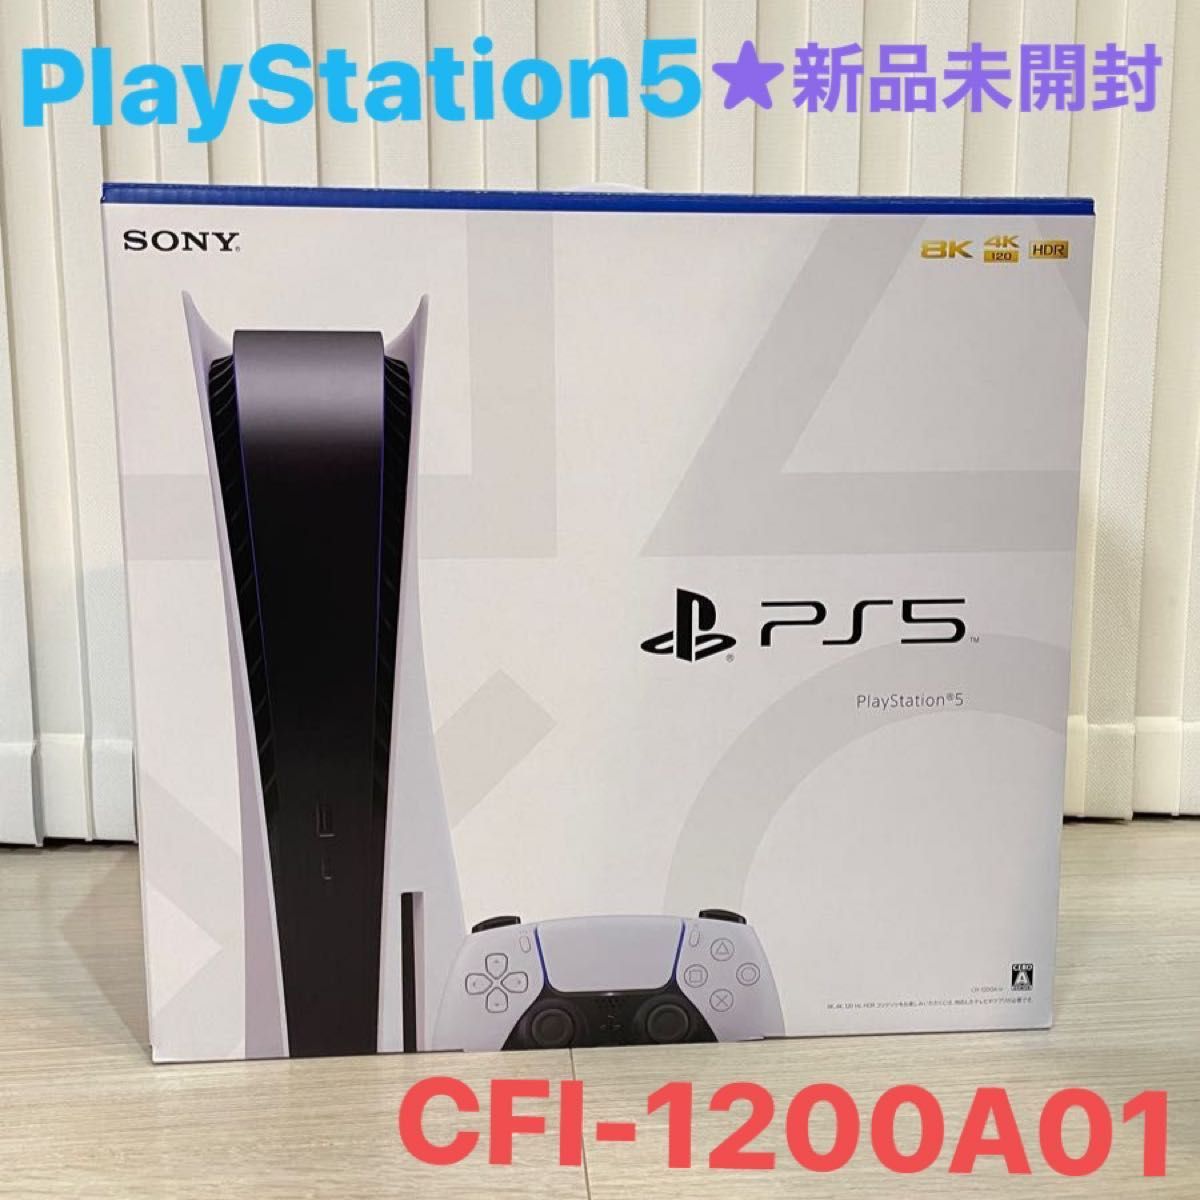 PlayStation5通常版 CFI-1200A01ディスクドライブ搭載モデル SONY